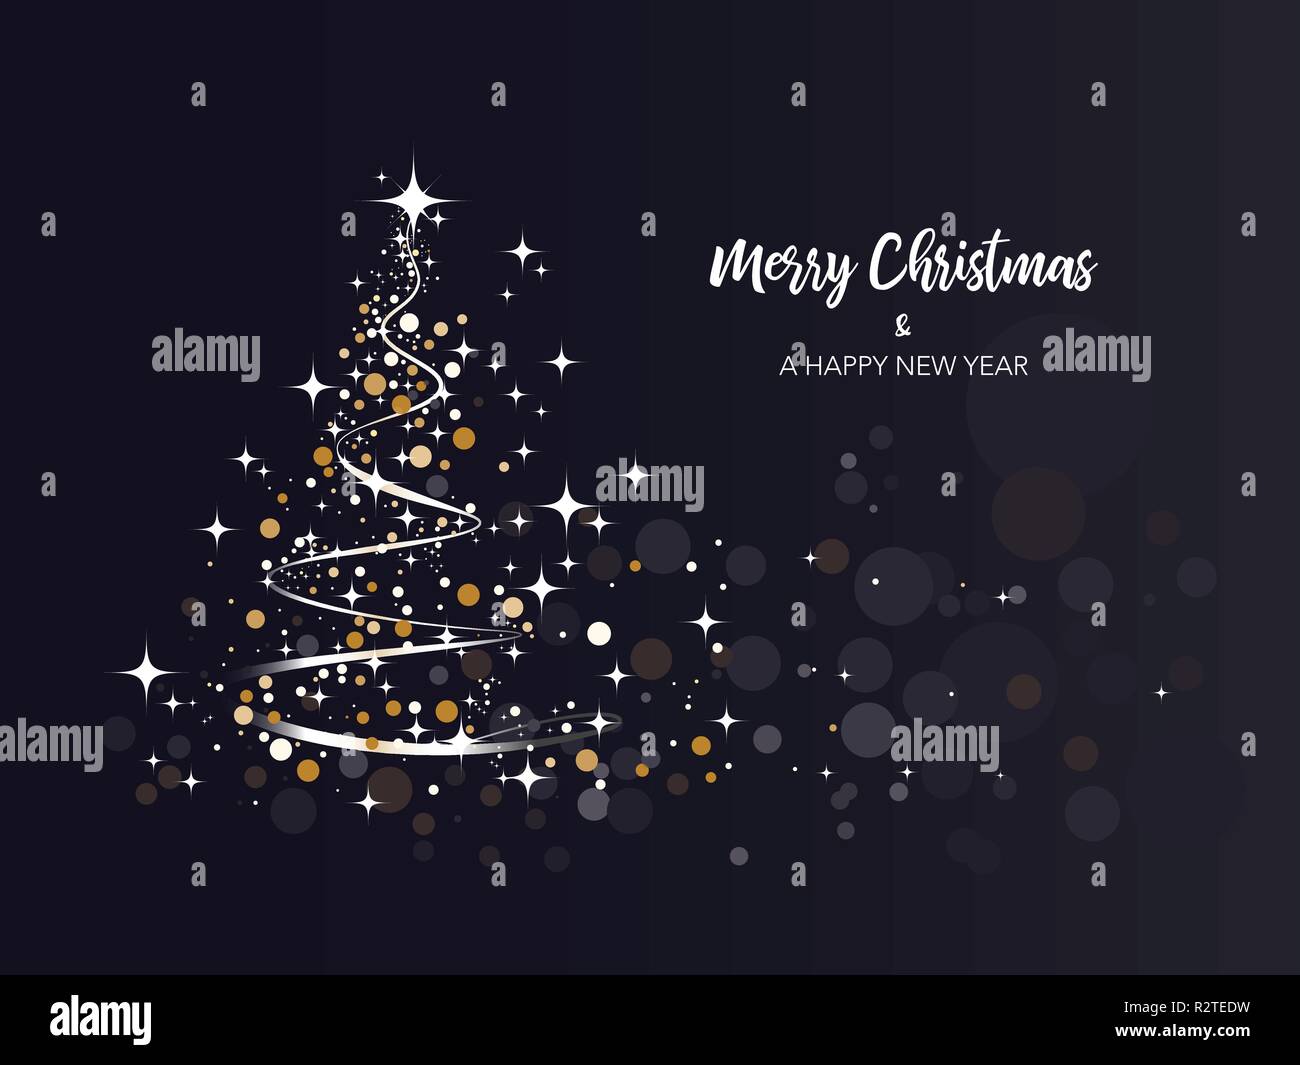 Sfondi Buon Natale.Luminosita Albero Di Natale Sfondo Buon Natale Illustrazione Vettoriale Immagine E Vettoriale Alamy